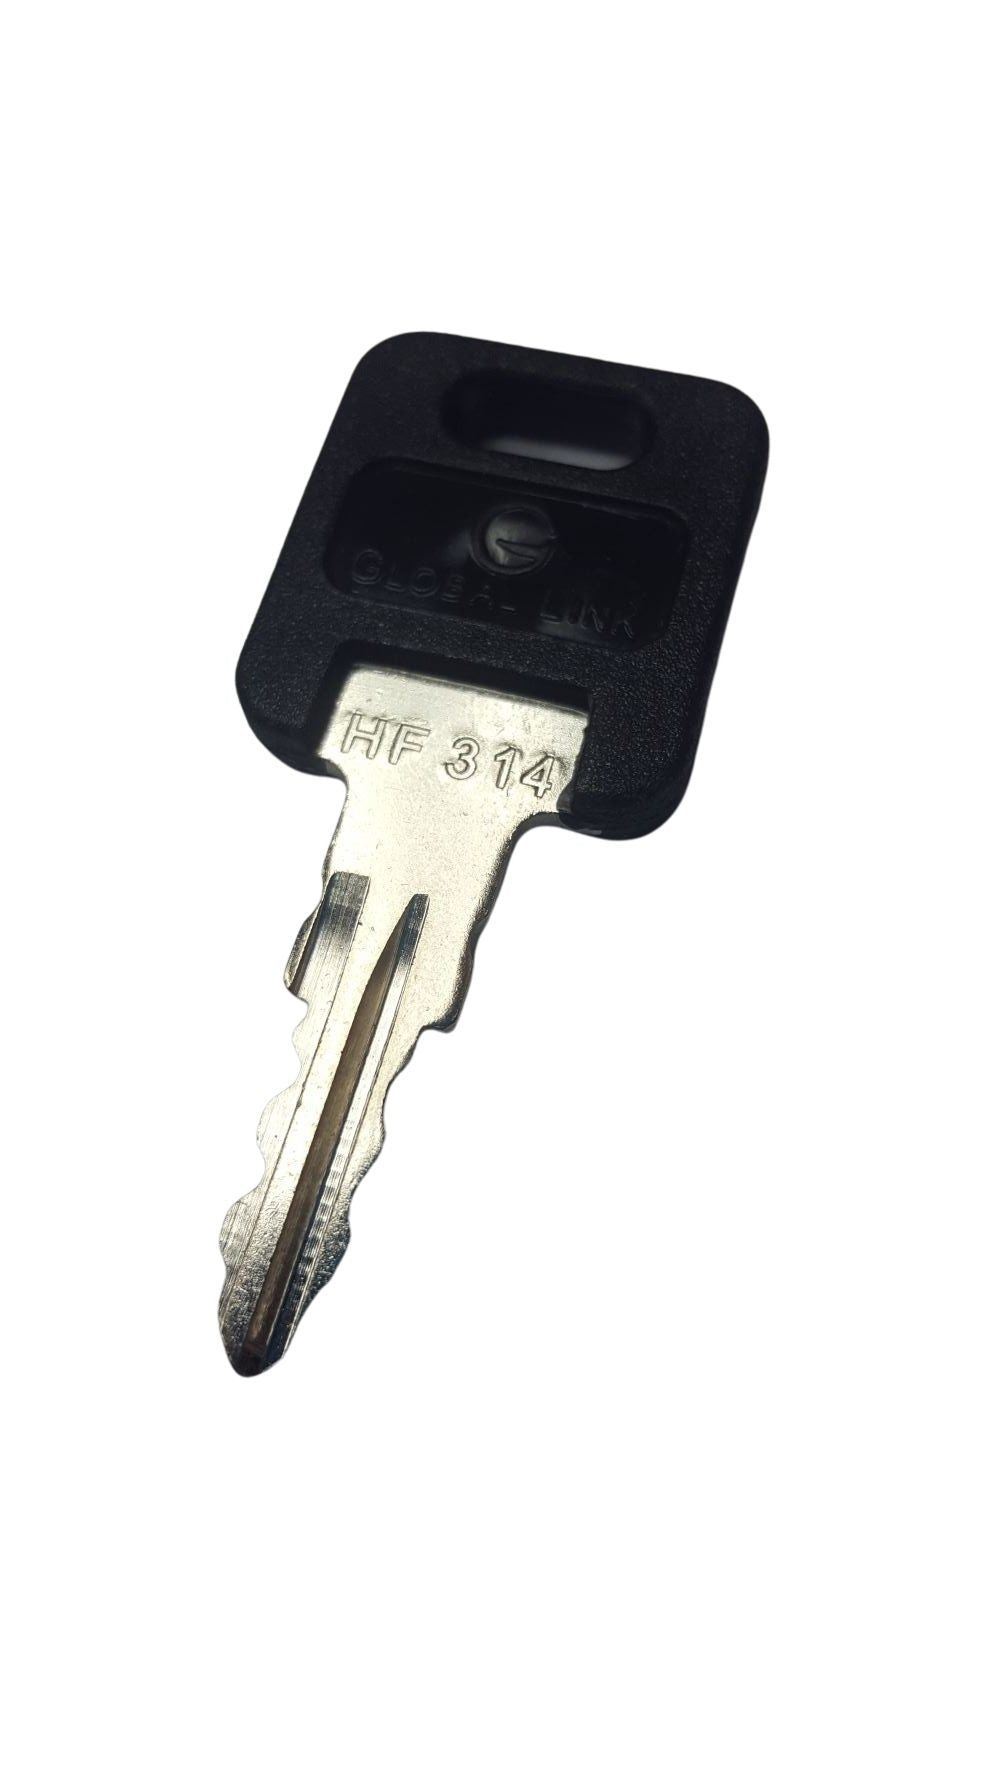 CPG KEY-HF-314 Pre-cut Stamped FIC Replacemnt HF314 Key